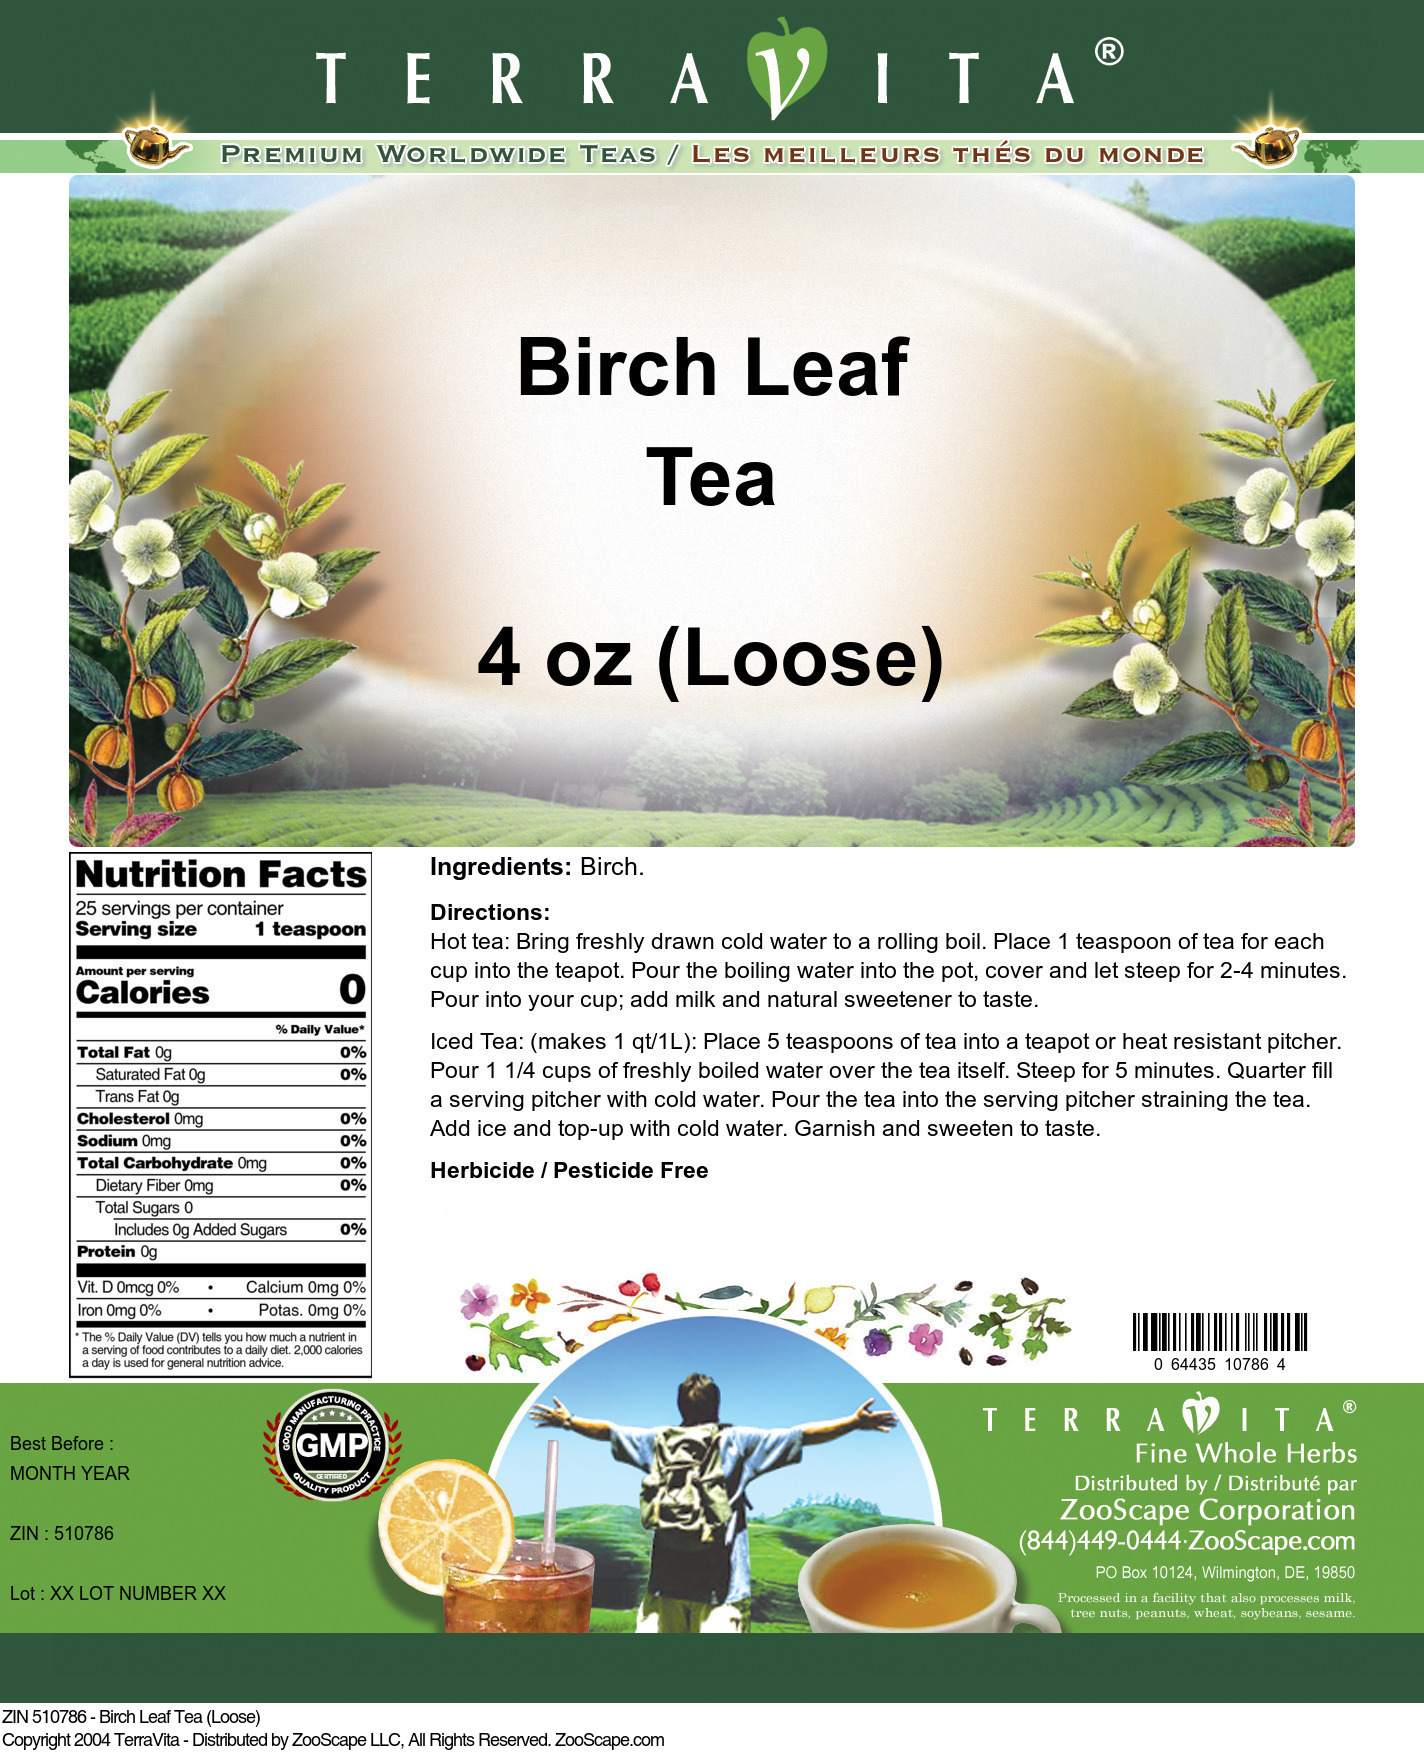 Birch Leaf Tea (Loose) - Label